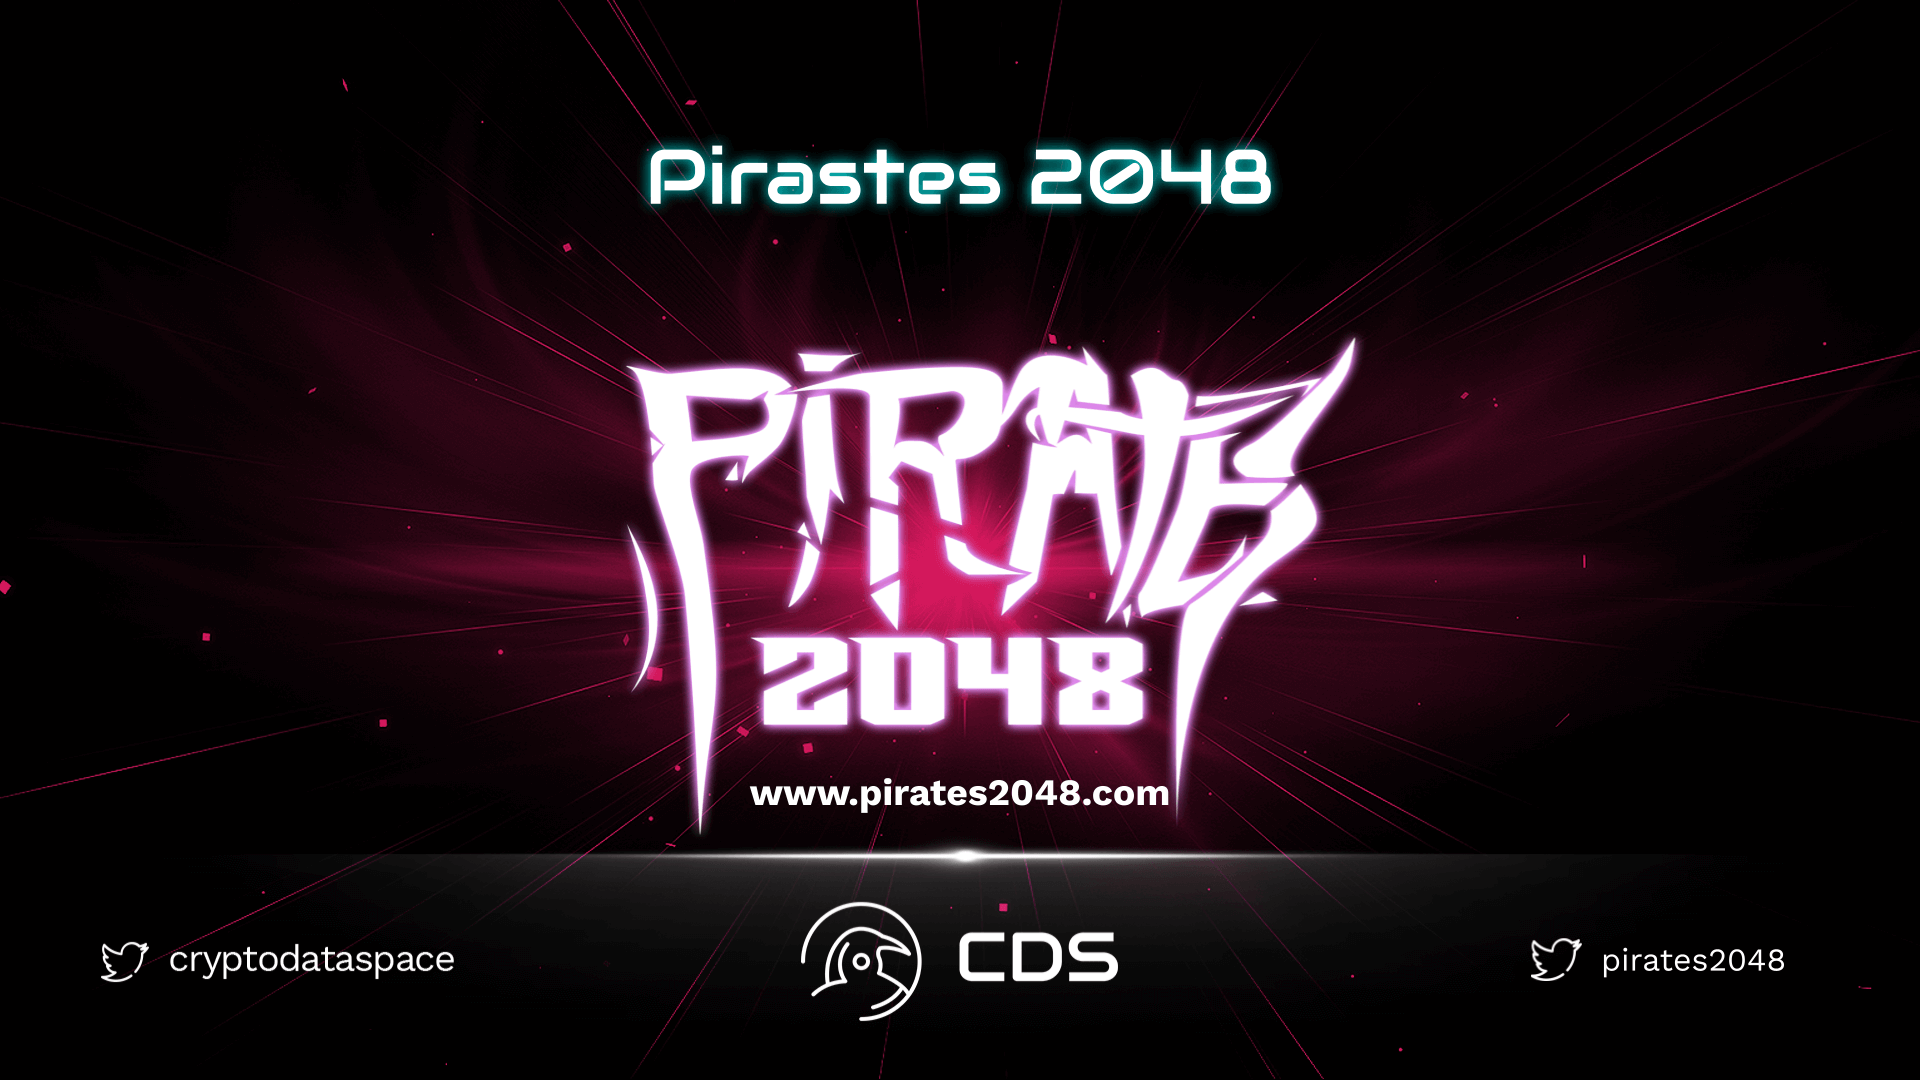 Pirates 2048